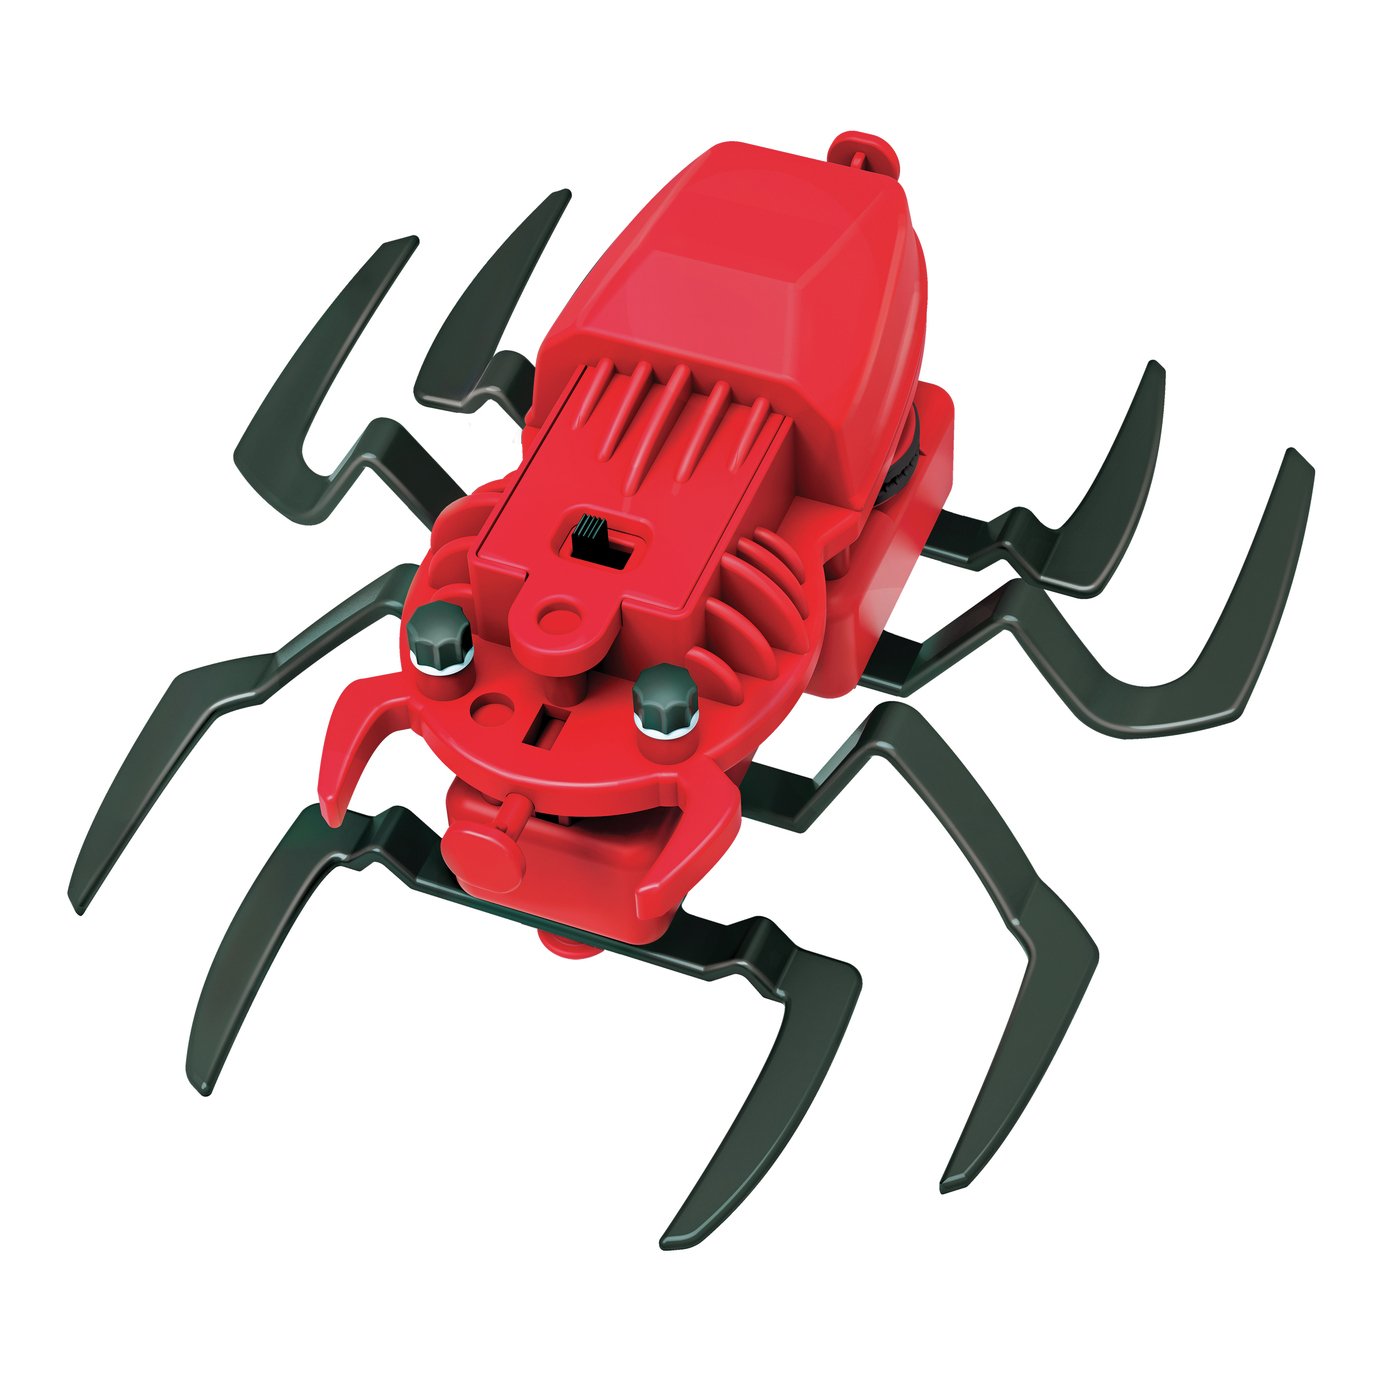 4M Kidzrobotics Spider Robot Review